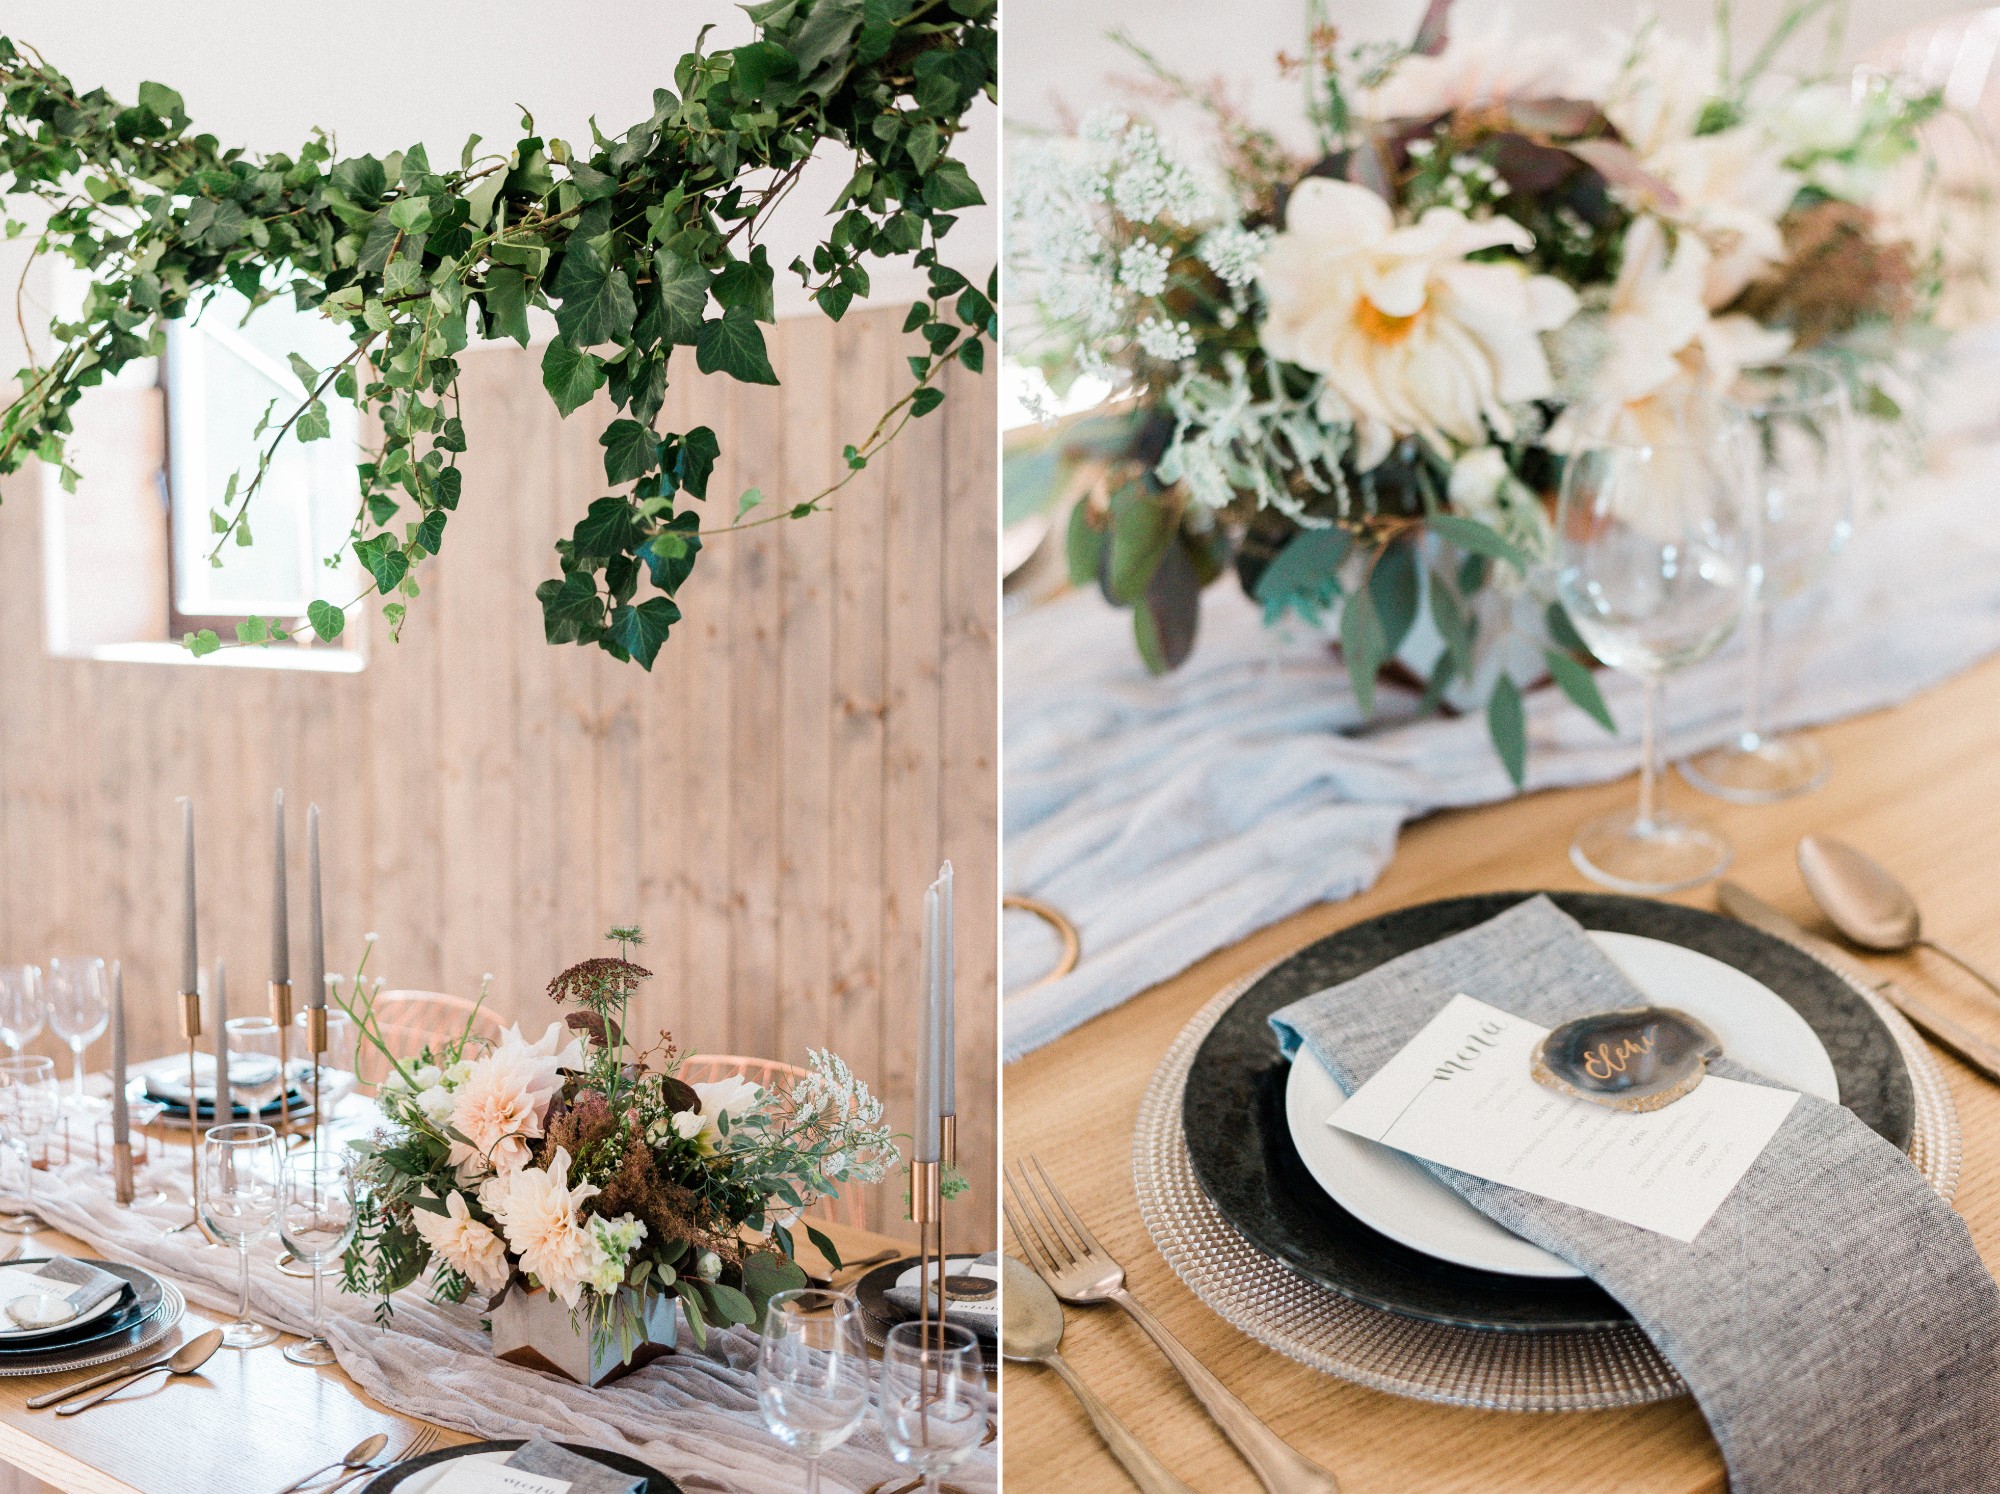 eskuvo asztaldekor vadviragos osz arany natural wedding decor.jpg